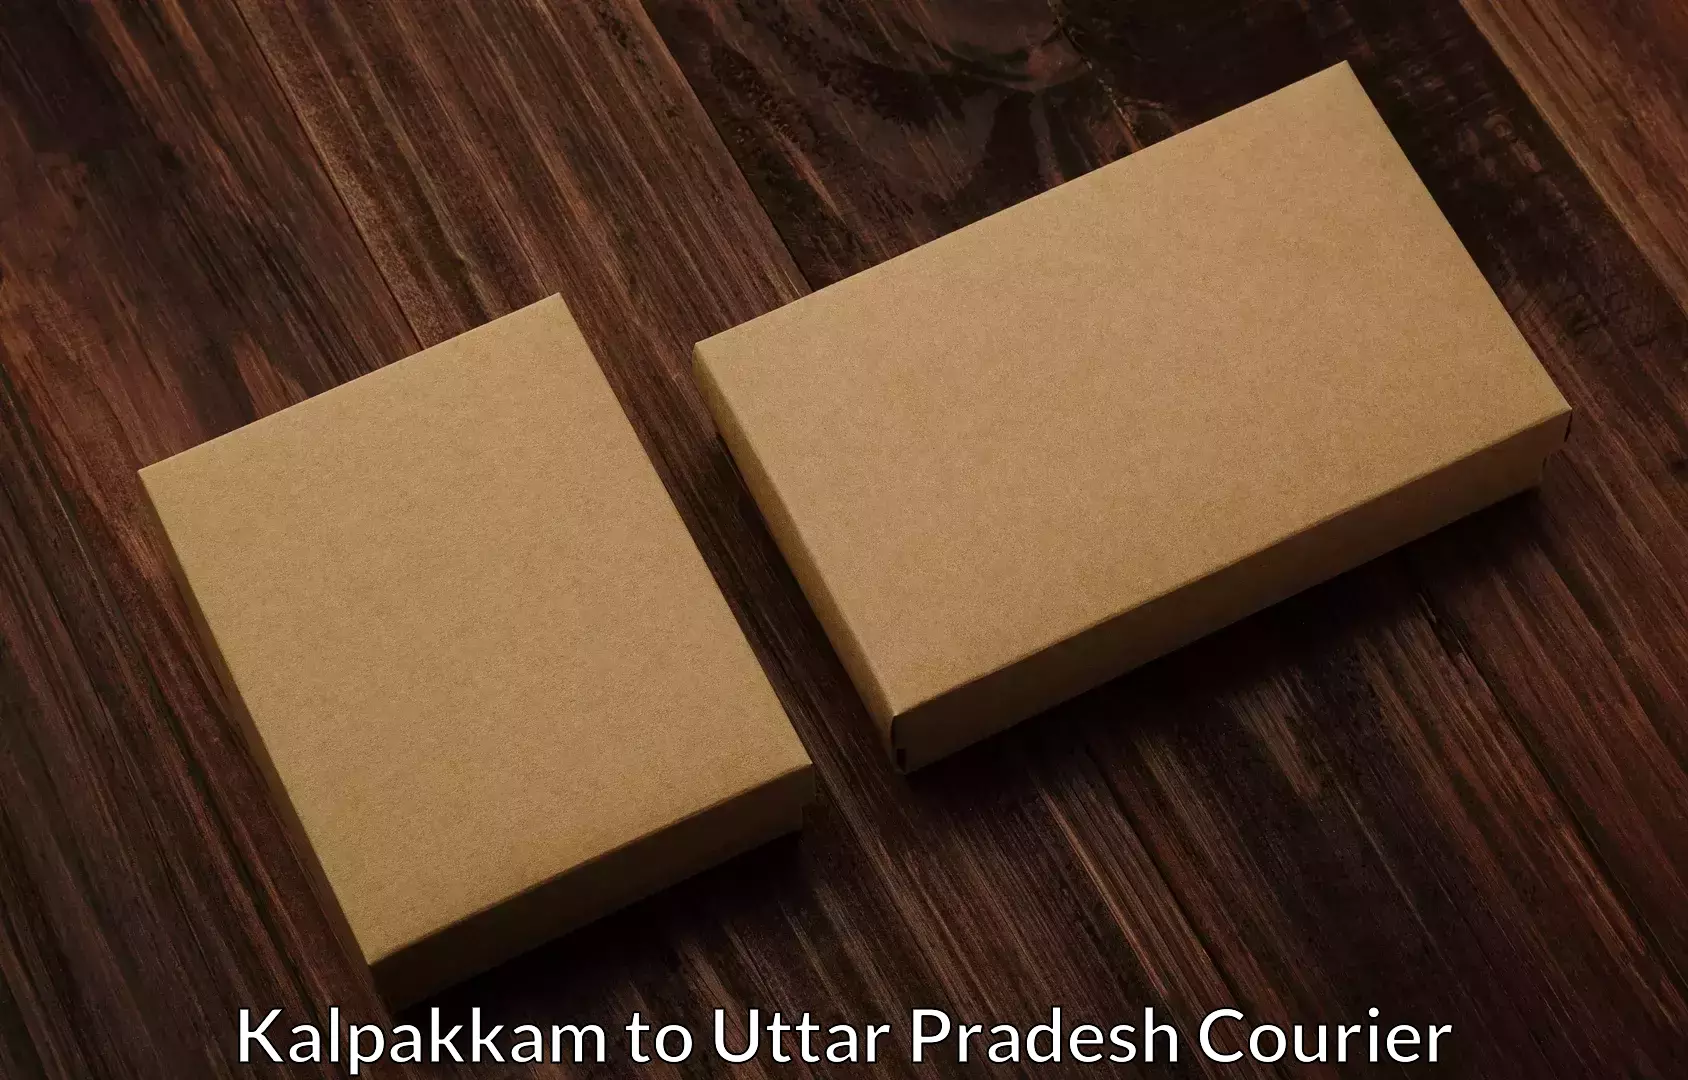 Efficient moving company Kalpakkam to Varanasi